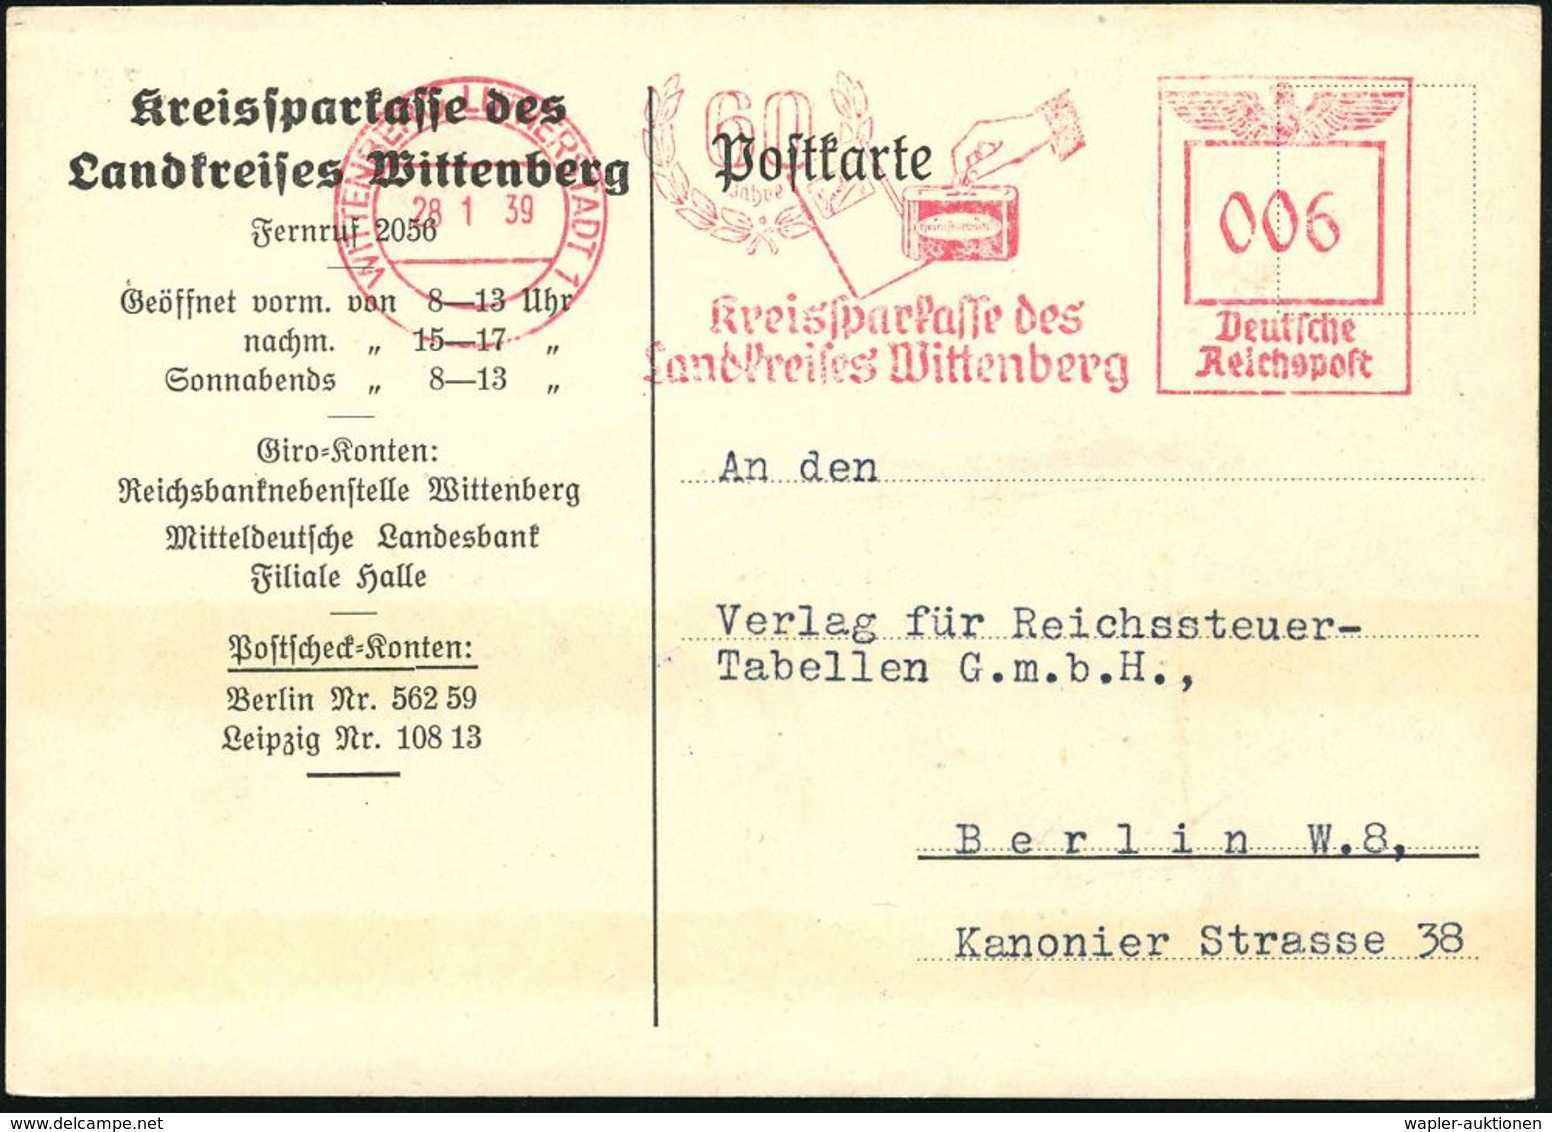 NUMISPHILATELIE / GELDSCHEINE / MÜNZEN : WITTENBERG LUTHERSTADT/ 60 Jahre/ Kreissparkasse Der/ Landkreises.. 1939 (28.1. - Non Classés